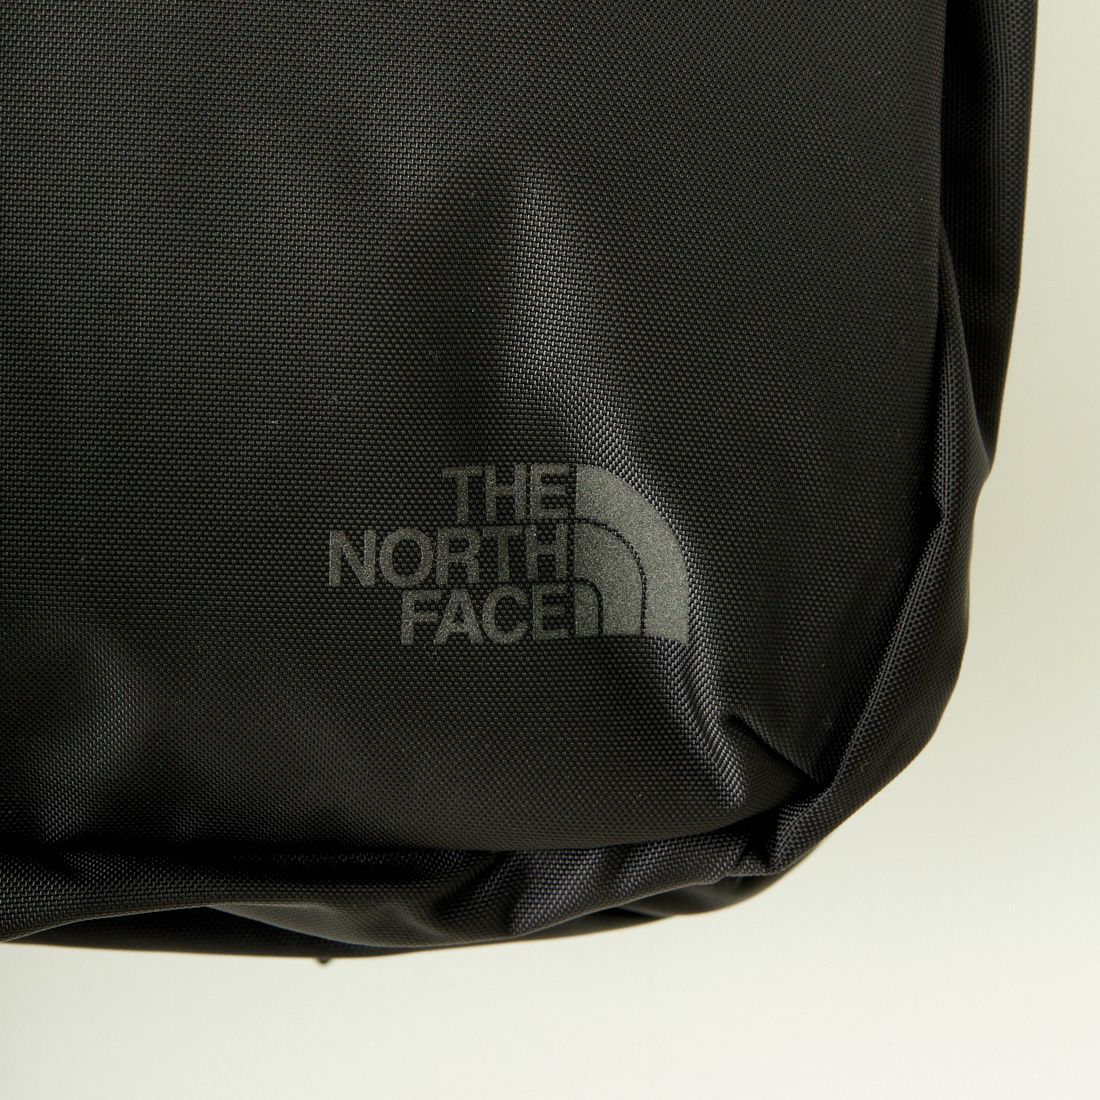 THE NORTH FACE [ザ ノースフェイス] シャトルダッフル [NM82332] K